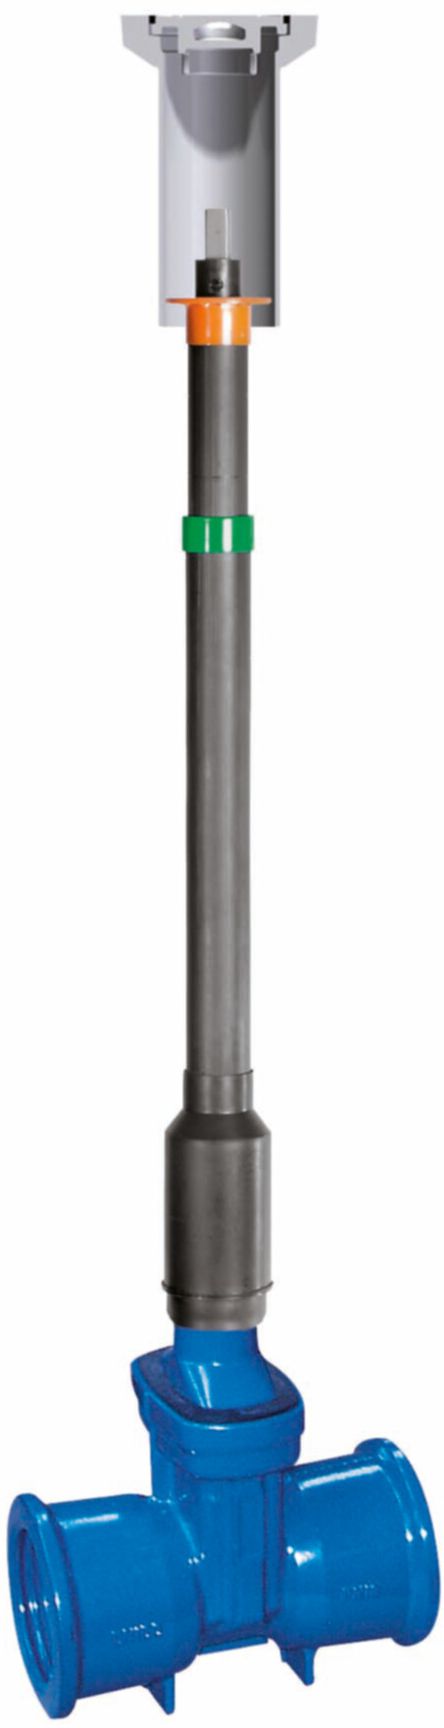 Teleskop-Einbaugarnitur Fig. 6895 L1 DN 200 GT 1.28- 1.56 m - Von Roll Armaturen